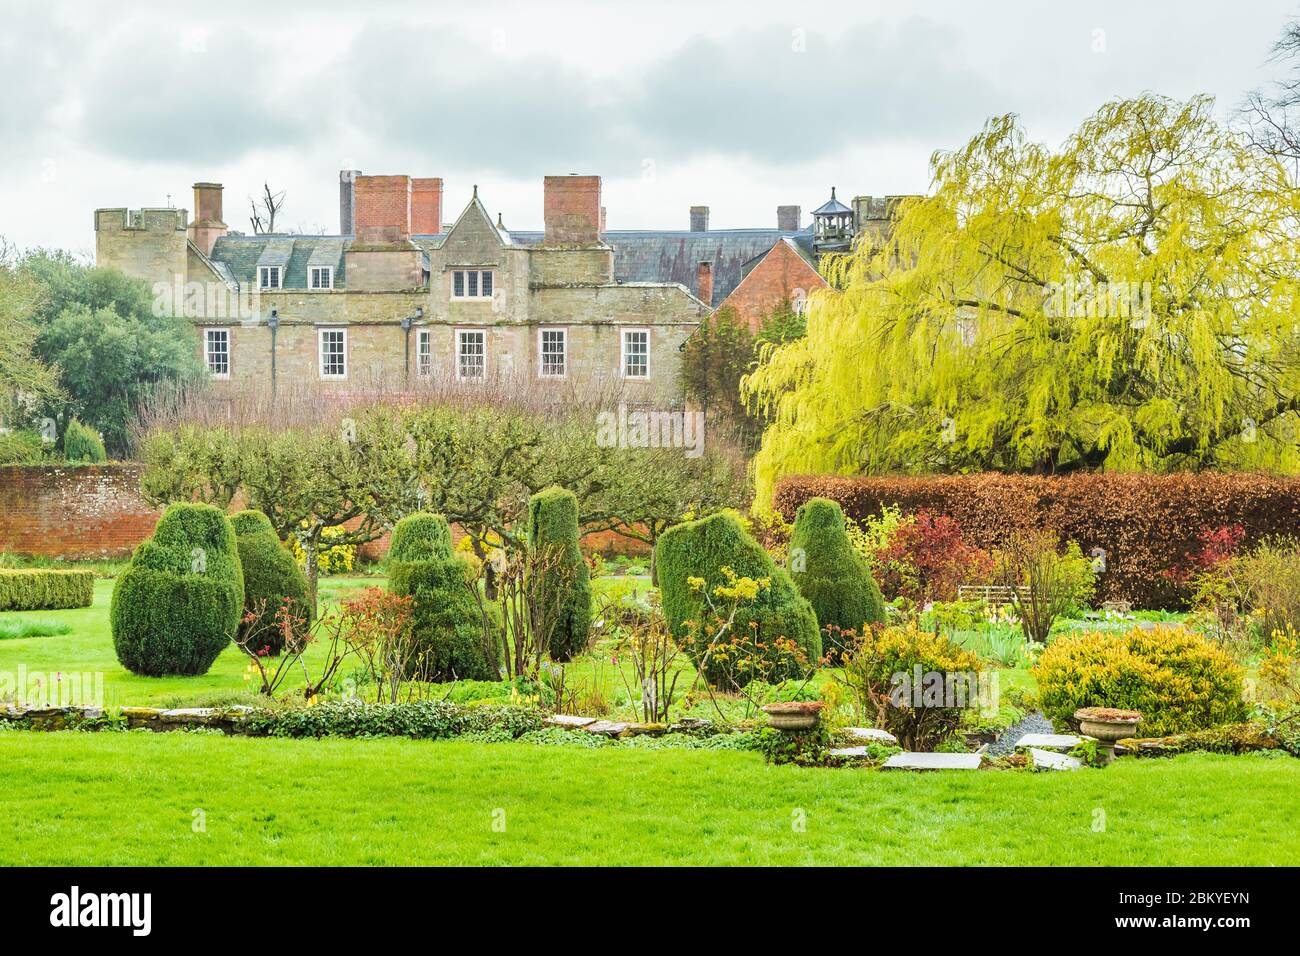 Herefordshire, Angleterre, 3 avril 2019 : vue sur le château de Croft à travers les jardins. Banque D'Images